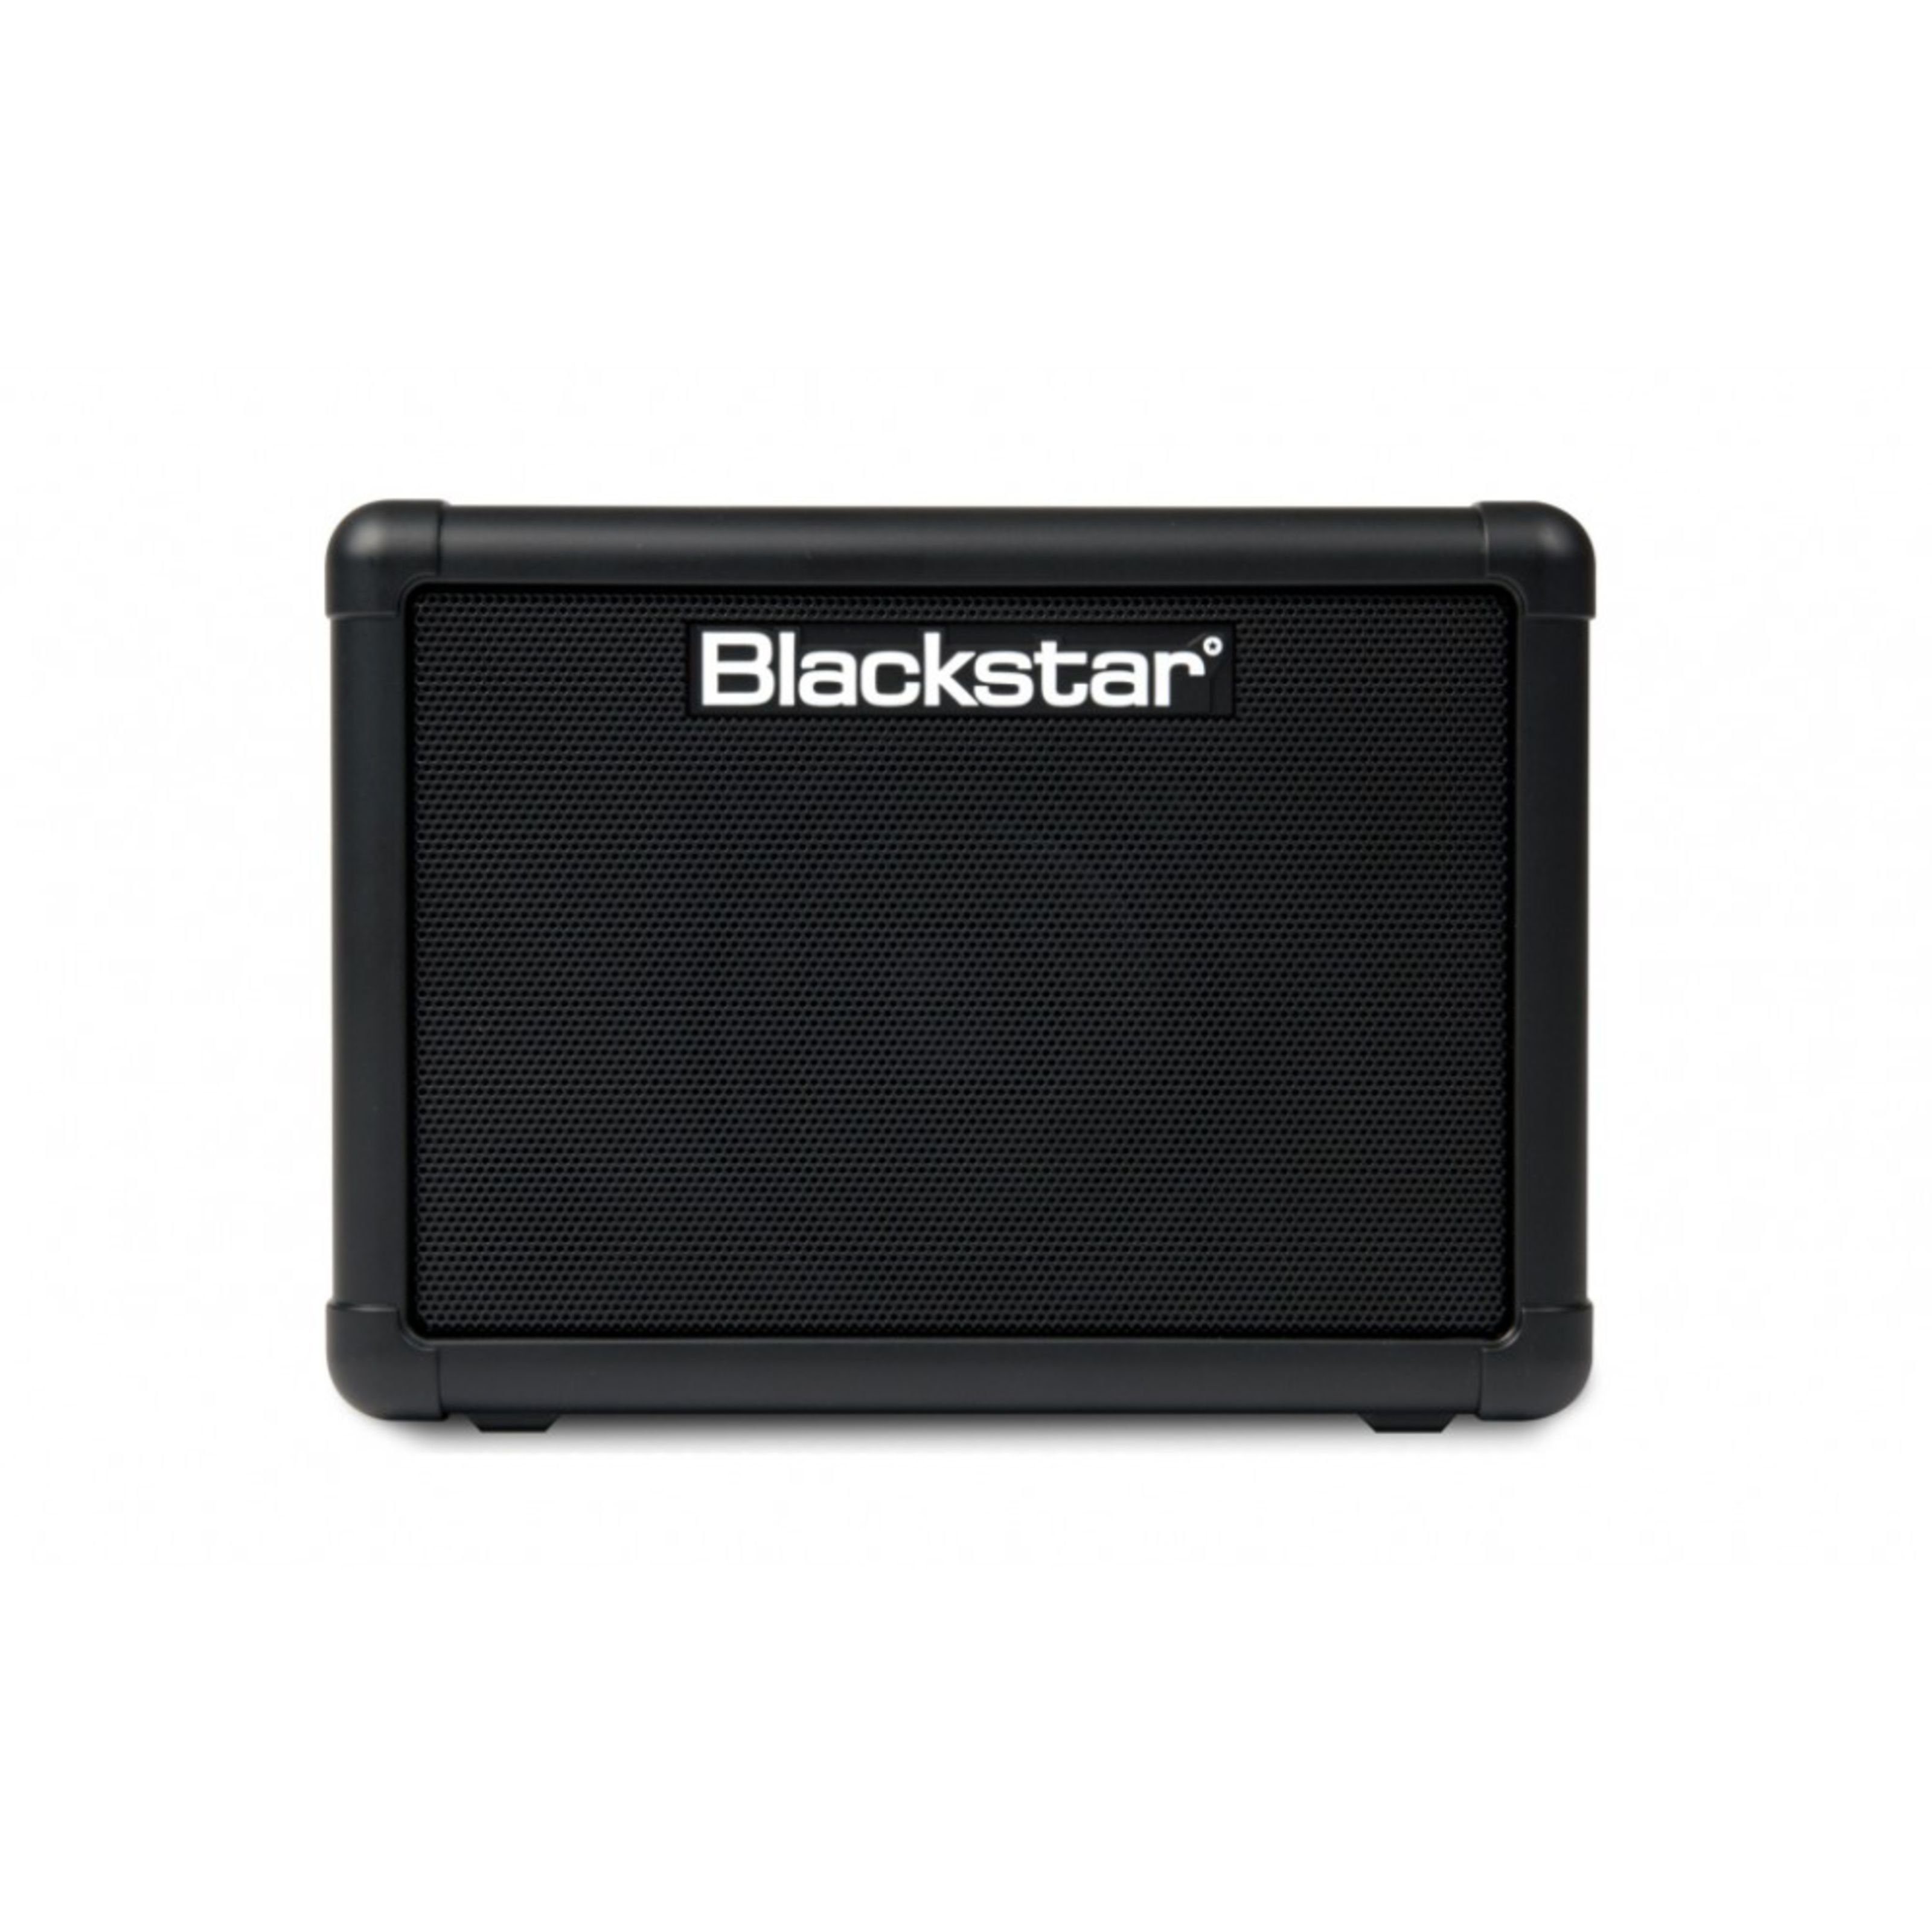 Blackstar Verstärker (Fly 3 Extension Cabinet)